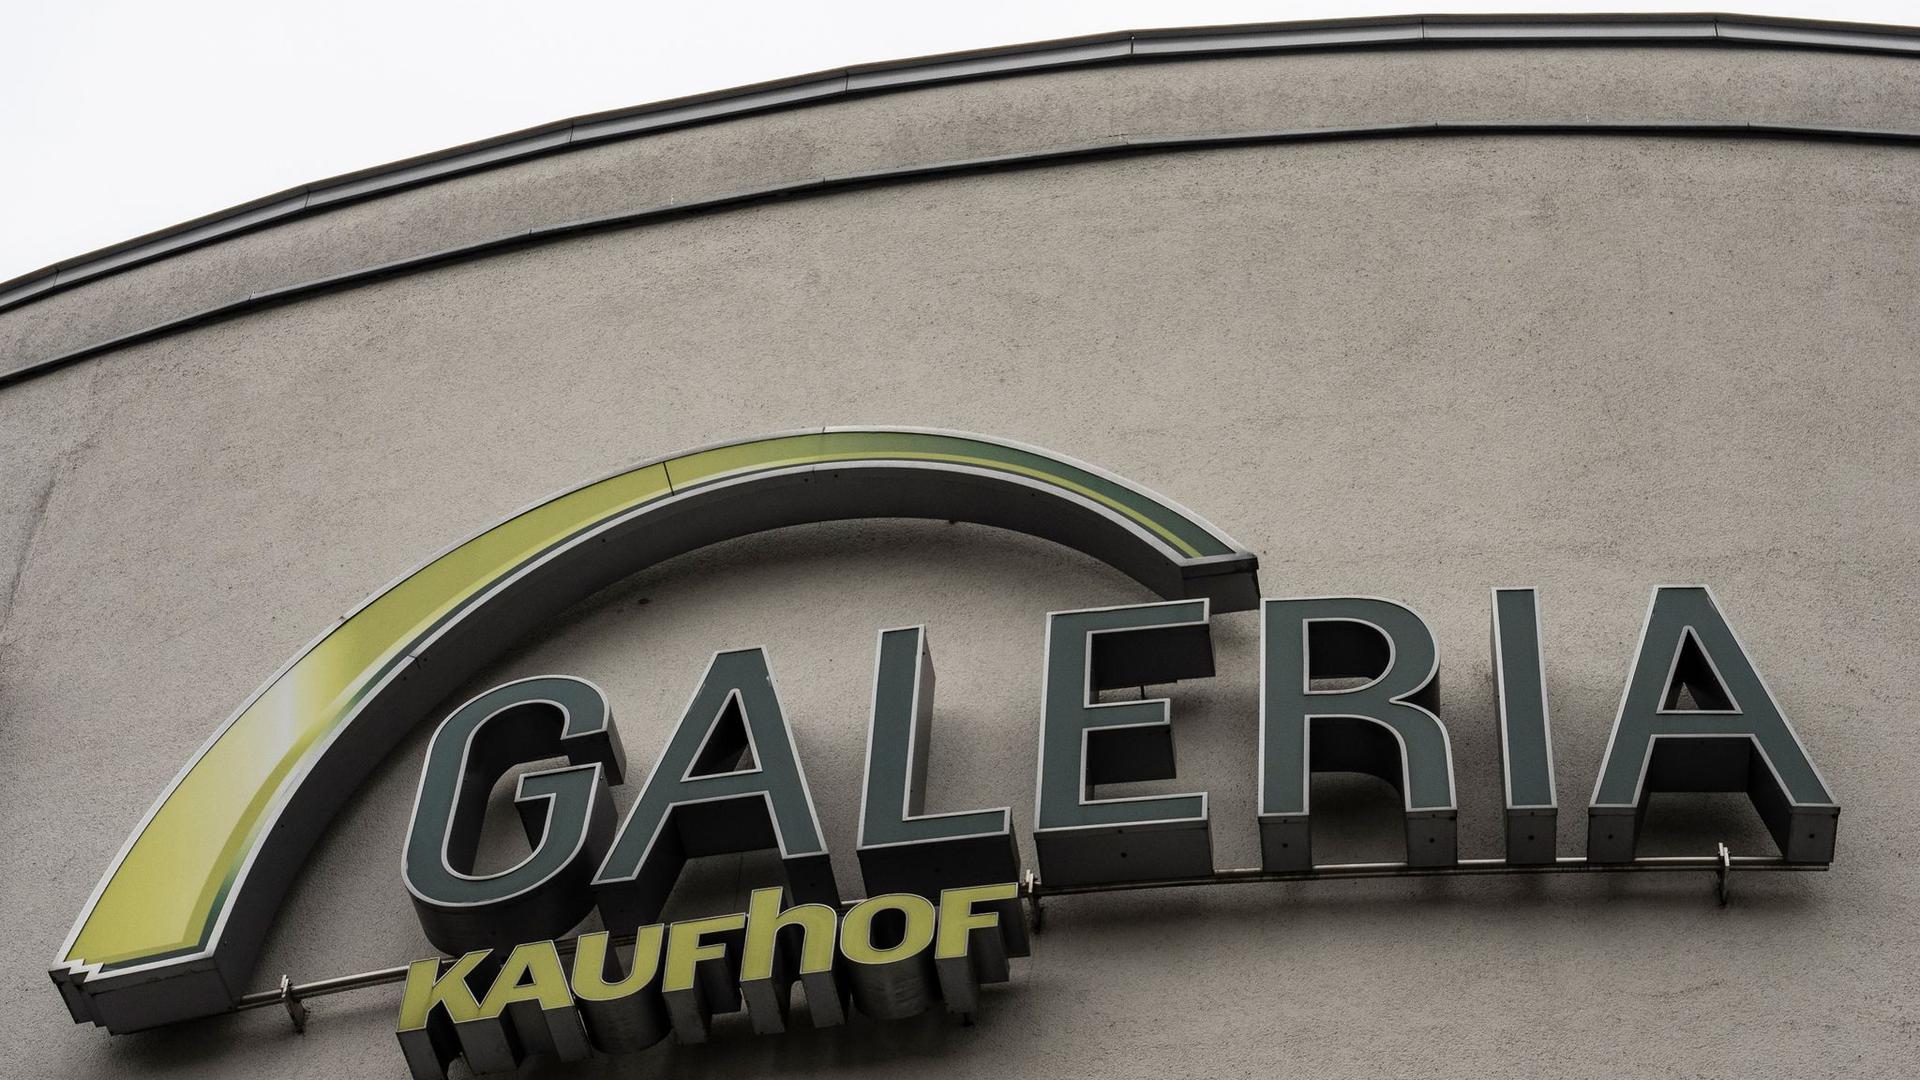 Das Logo der Galeria Kaufhof an der Fassade eines Einkaufzentrums.